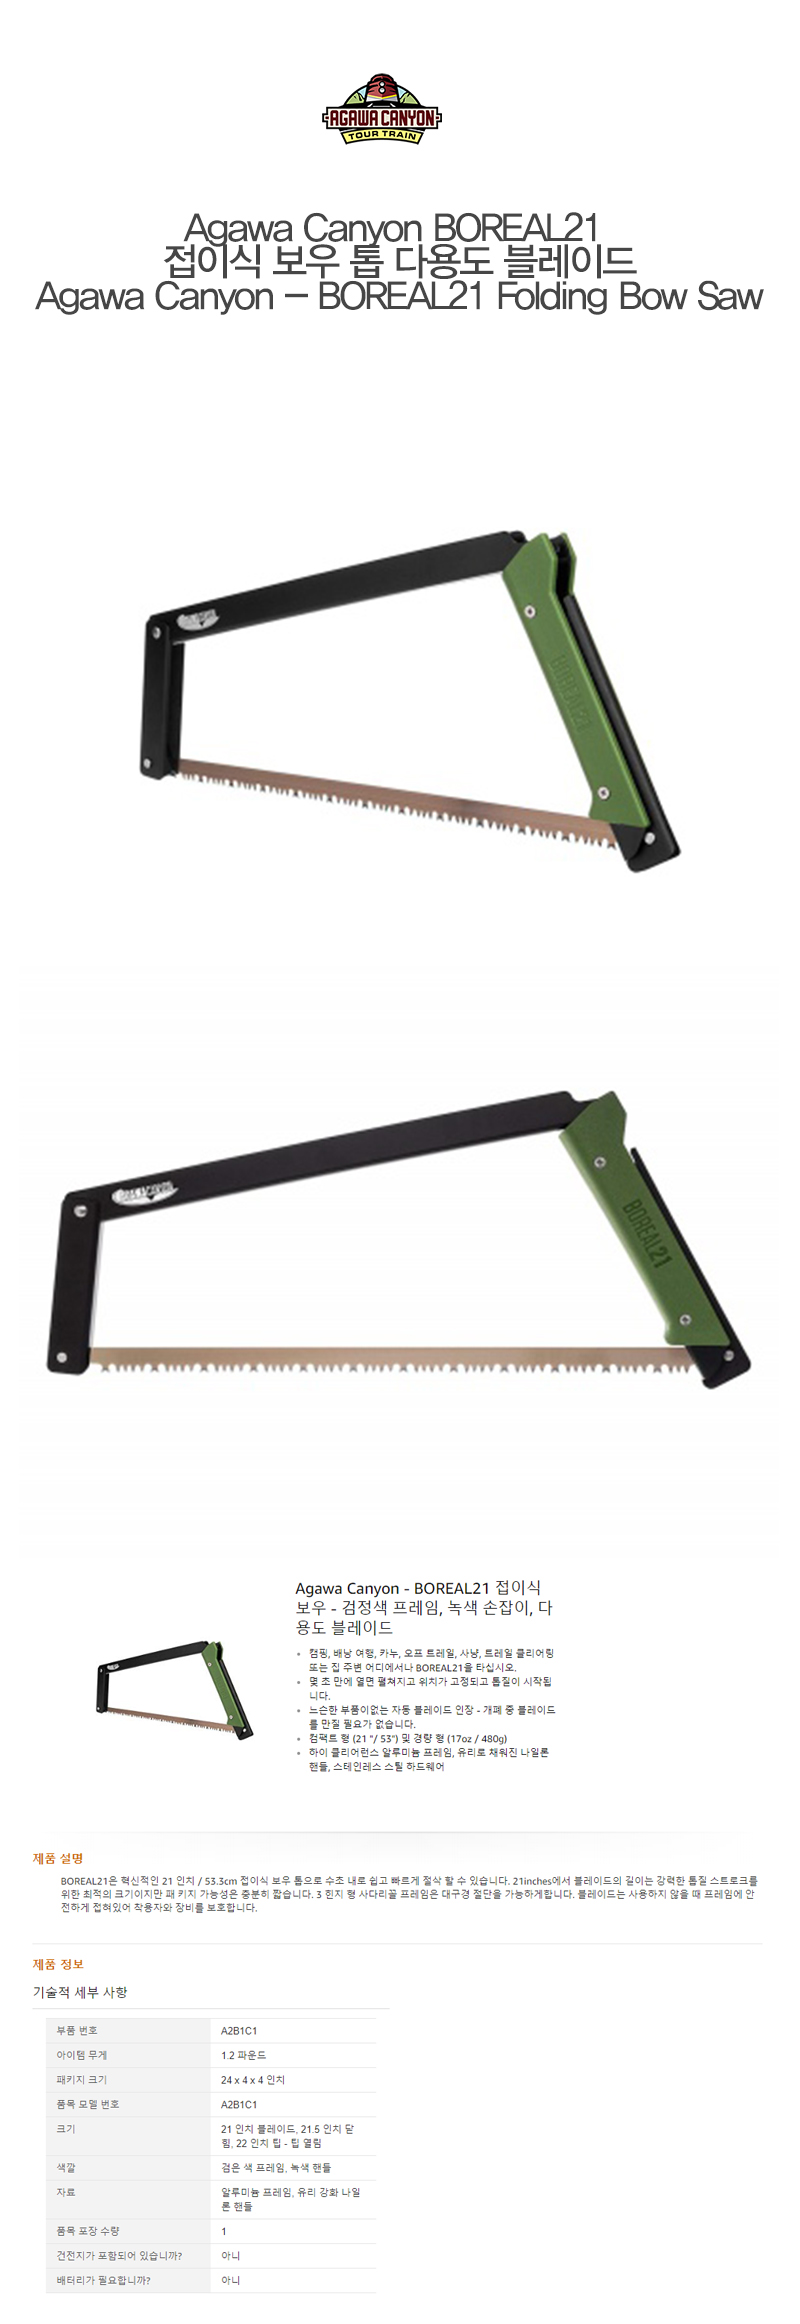  [무료배송]아가와 캐뇽 BOREAL21 접이식 보우 톱 다용도 블레이드 Agawa Canyon BOREAL21  Folding Bow Saw - Black Frame, Green Handle, All-Purpose Blade